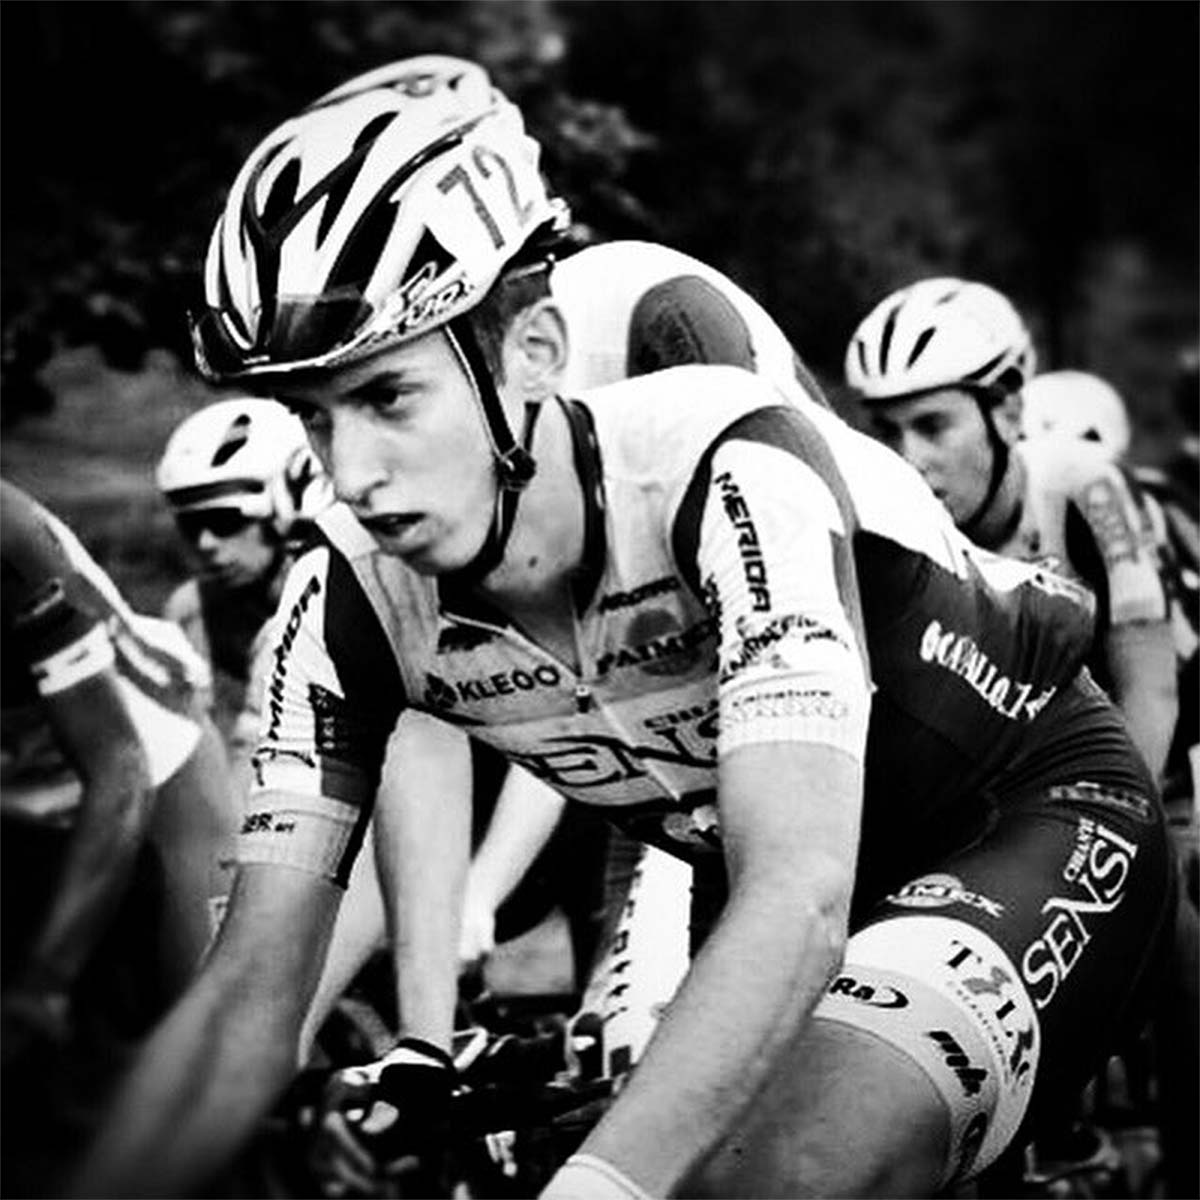 En TodoMountainBike: El ciclista italiano Michael Antonelli muere por coronavirus a los 21 años